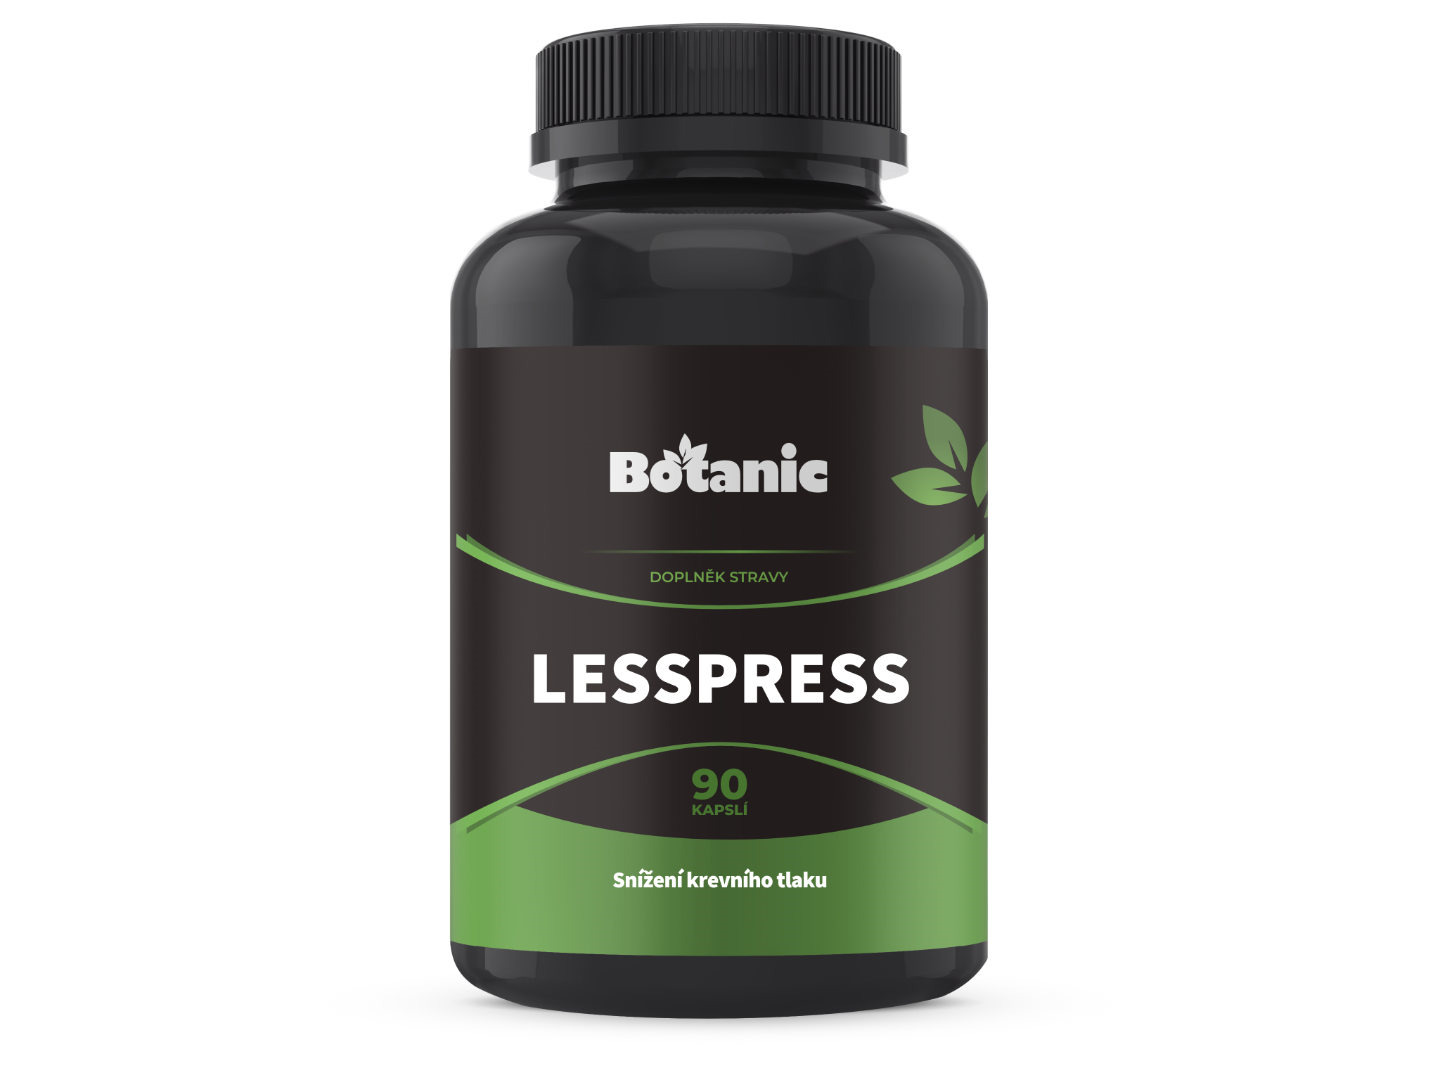 Botanic LessPress - Snížení krevního tlaku 90kap.